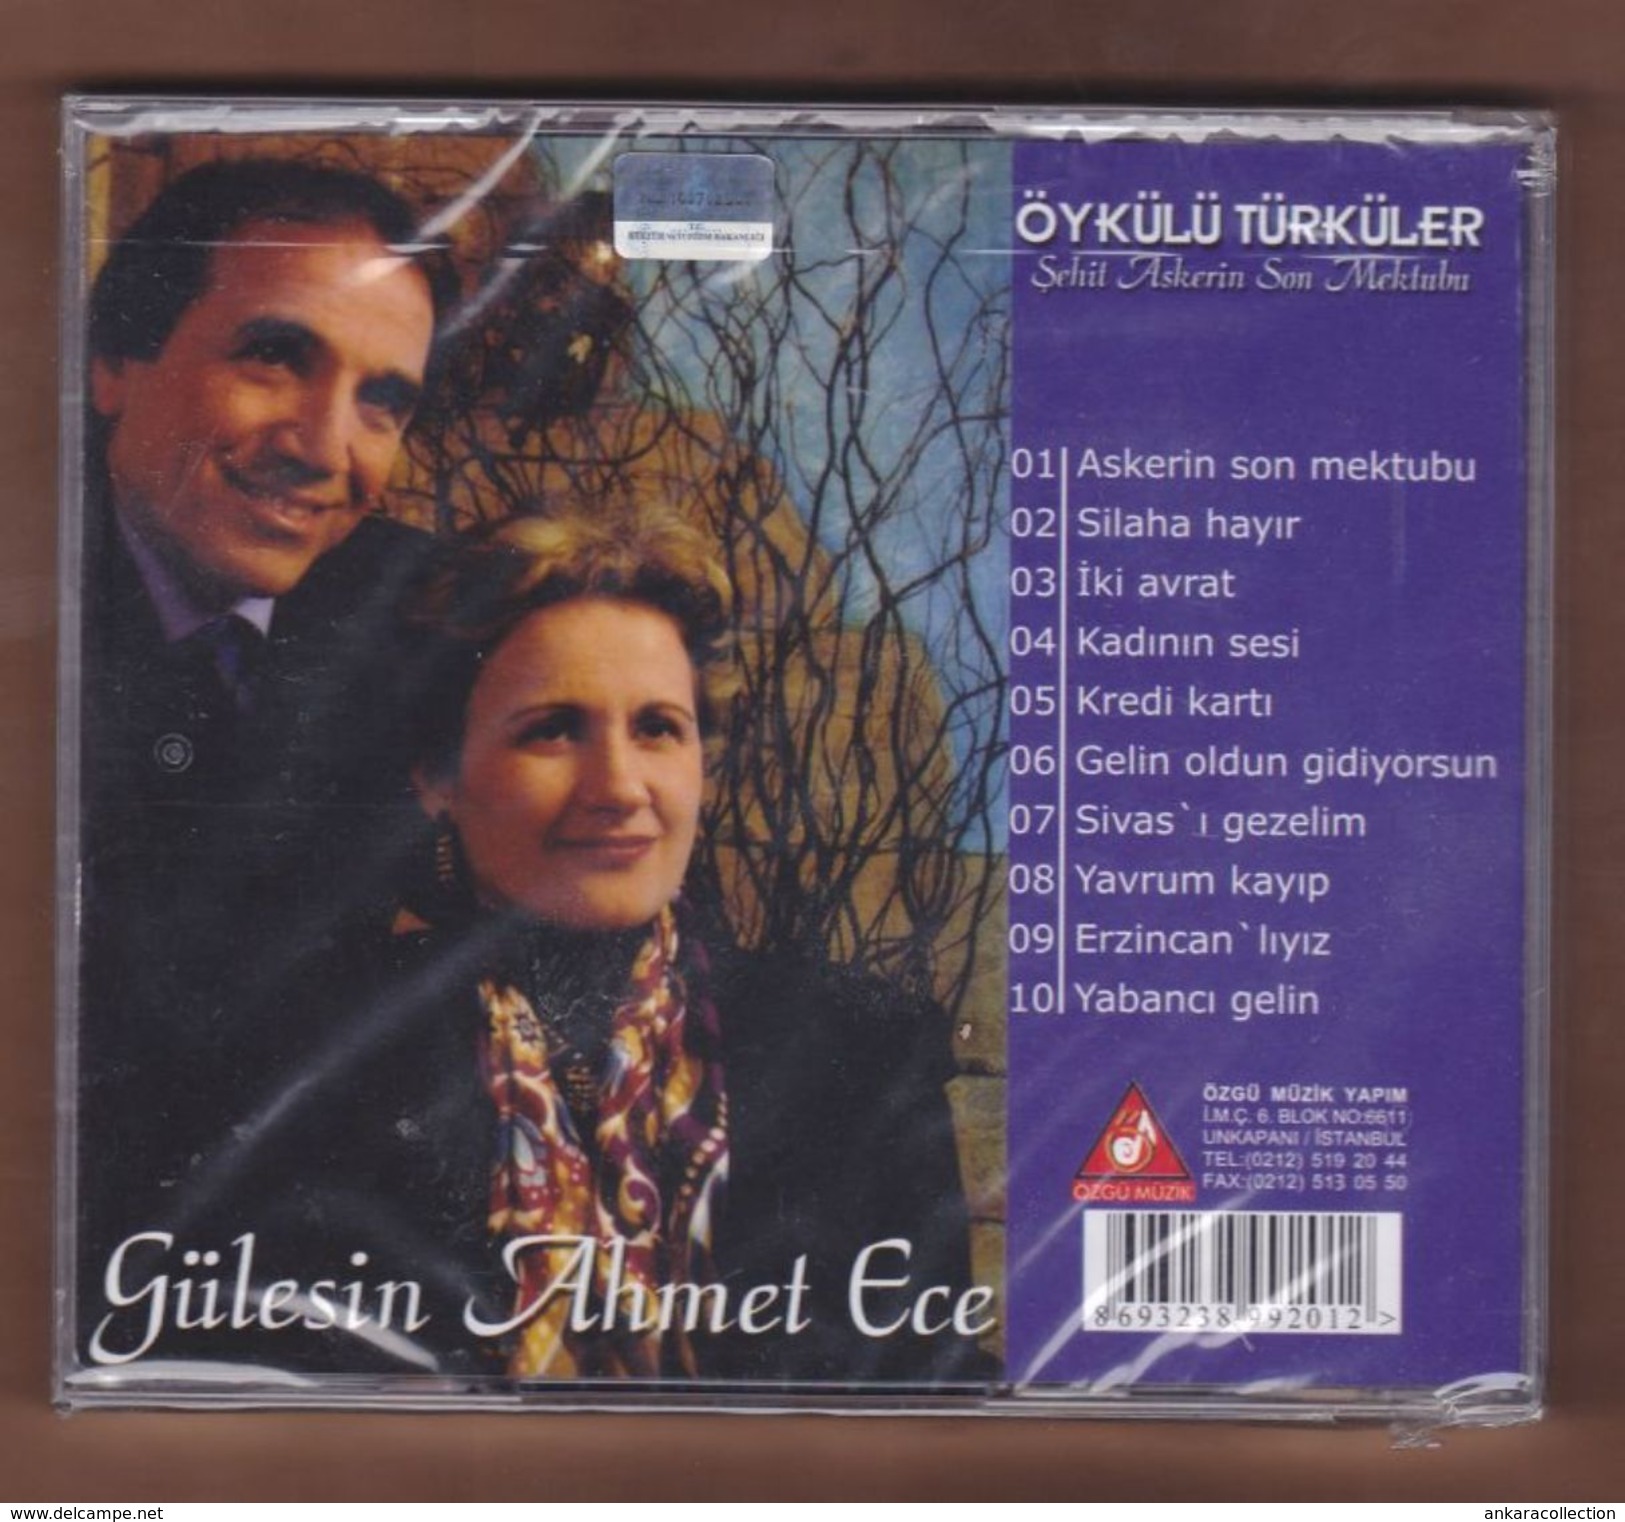 AC -  Gülesin Ahmet Ece öykülü Türküler şehit Askerin Son Mektubu BRAND NEW TURKISH MUSIC CD - World Music